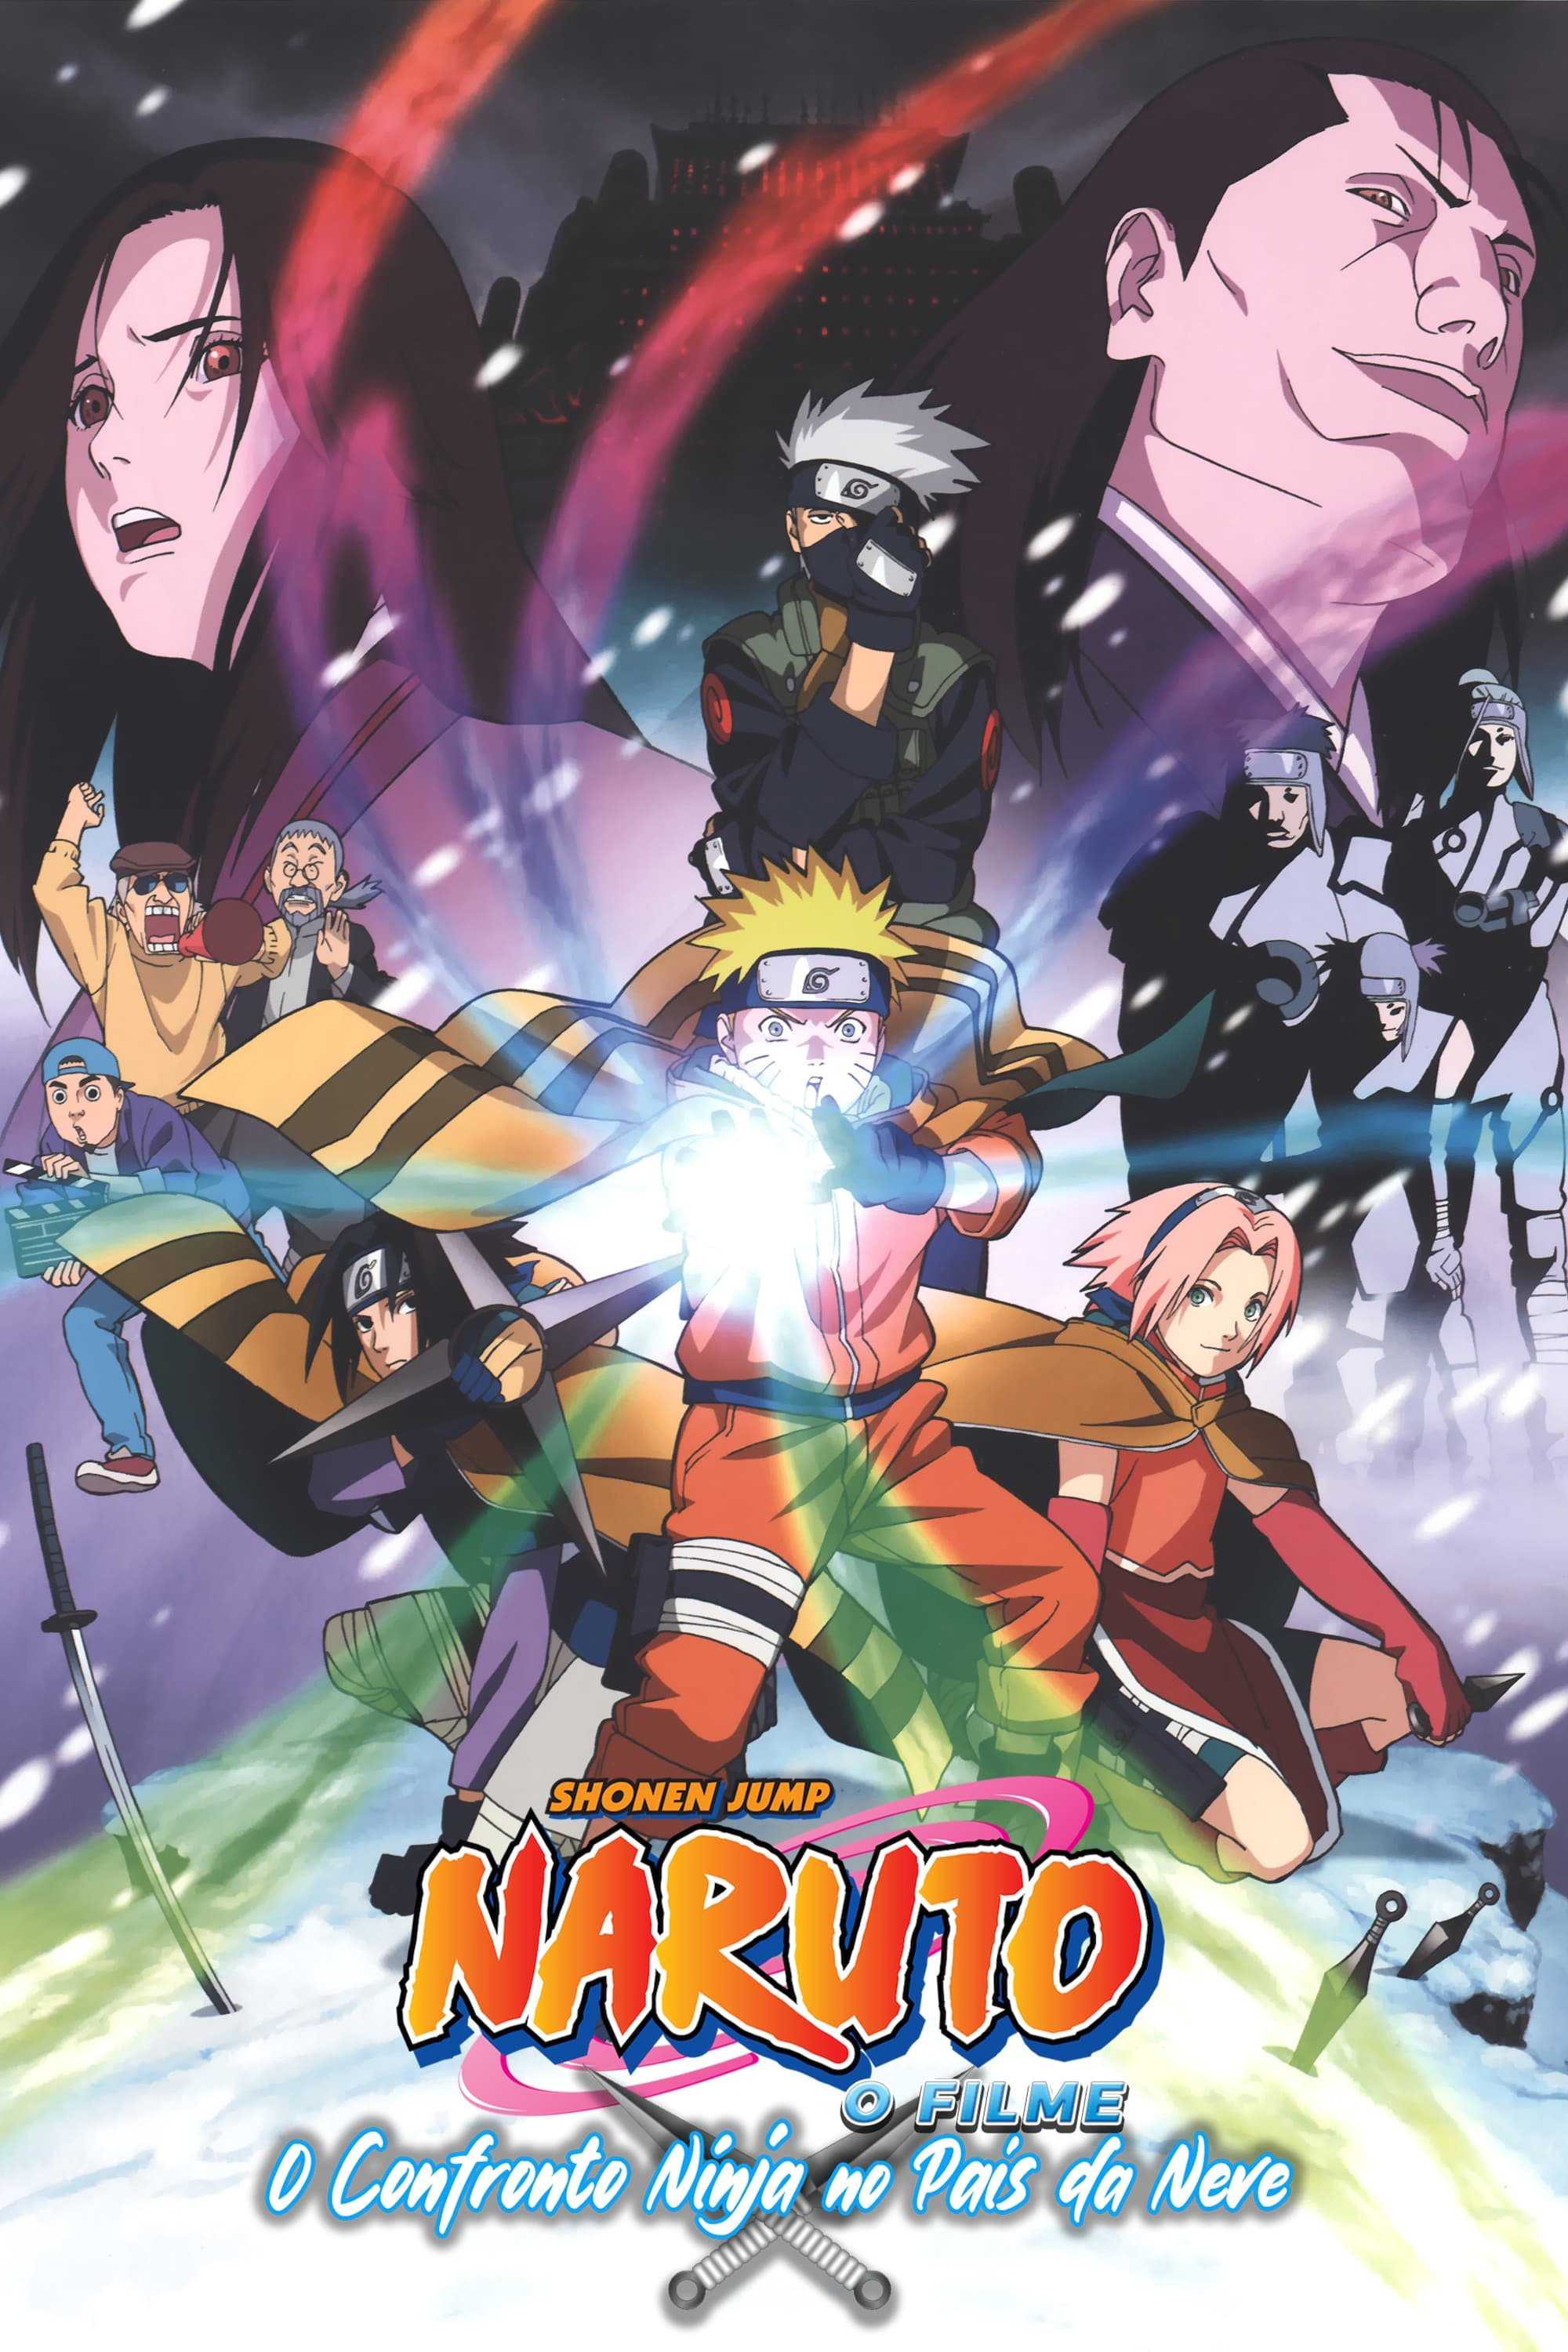 The Last: Naruto o Filme, Dublapédia